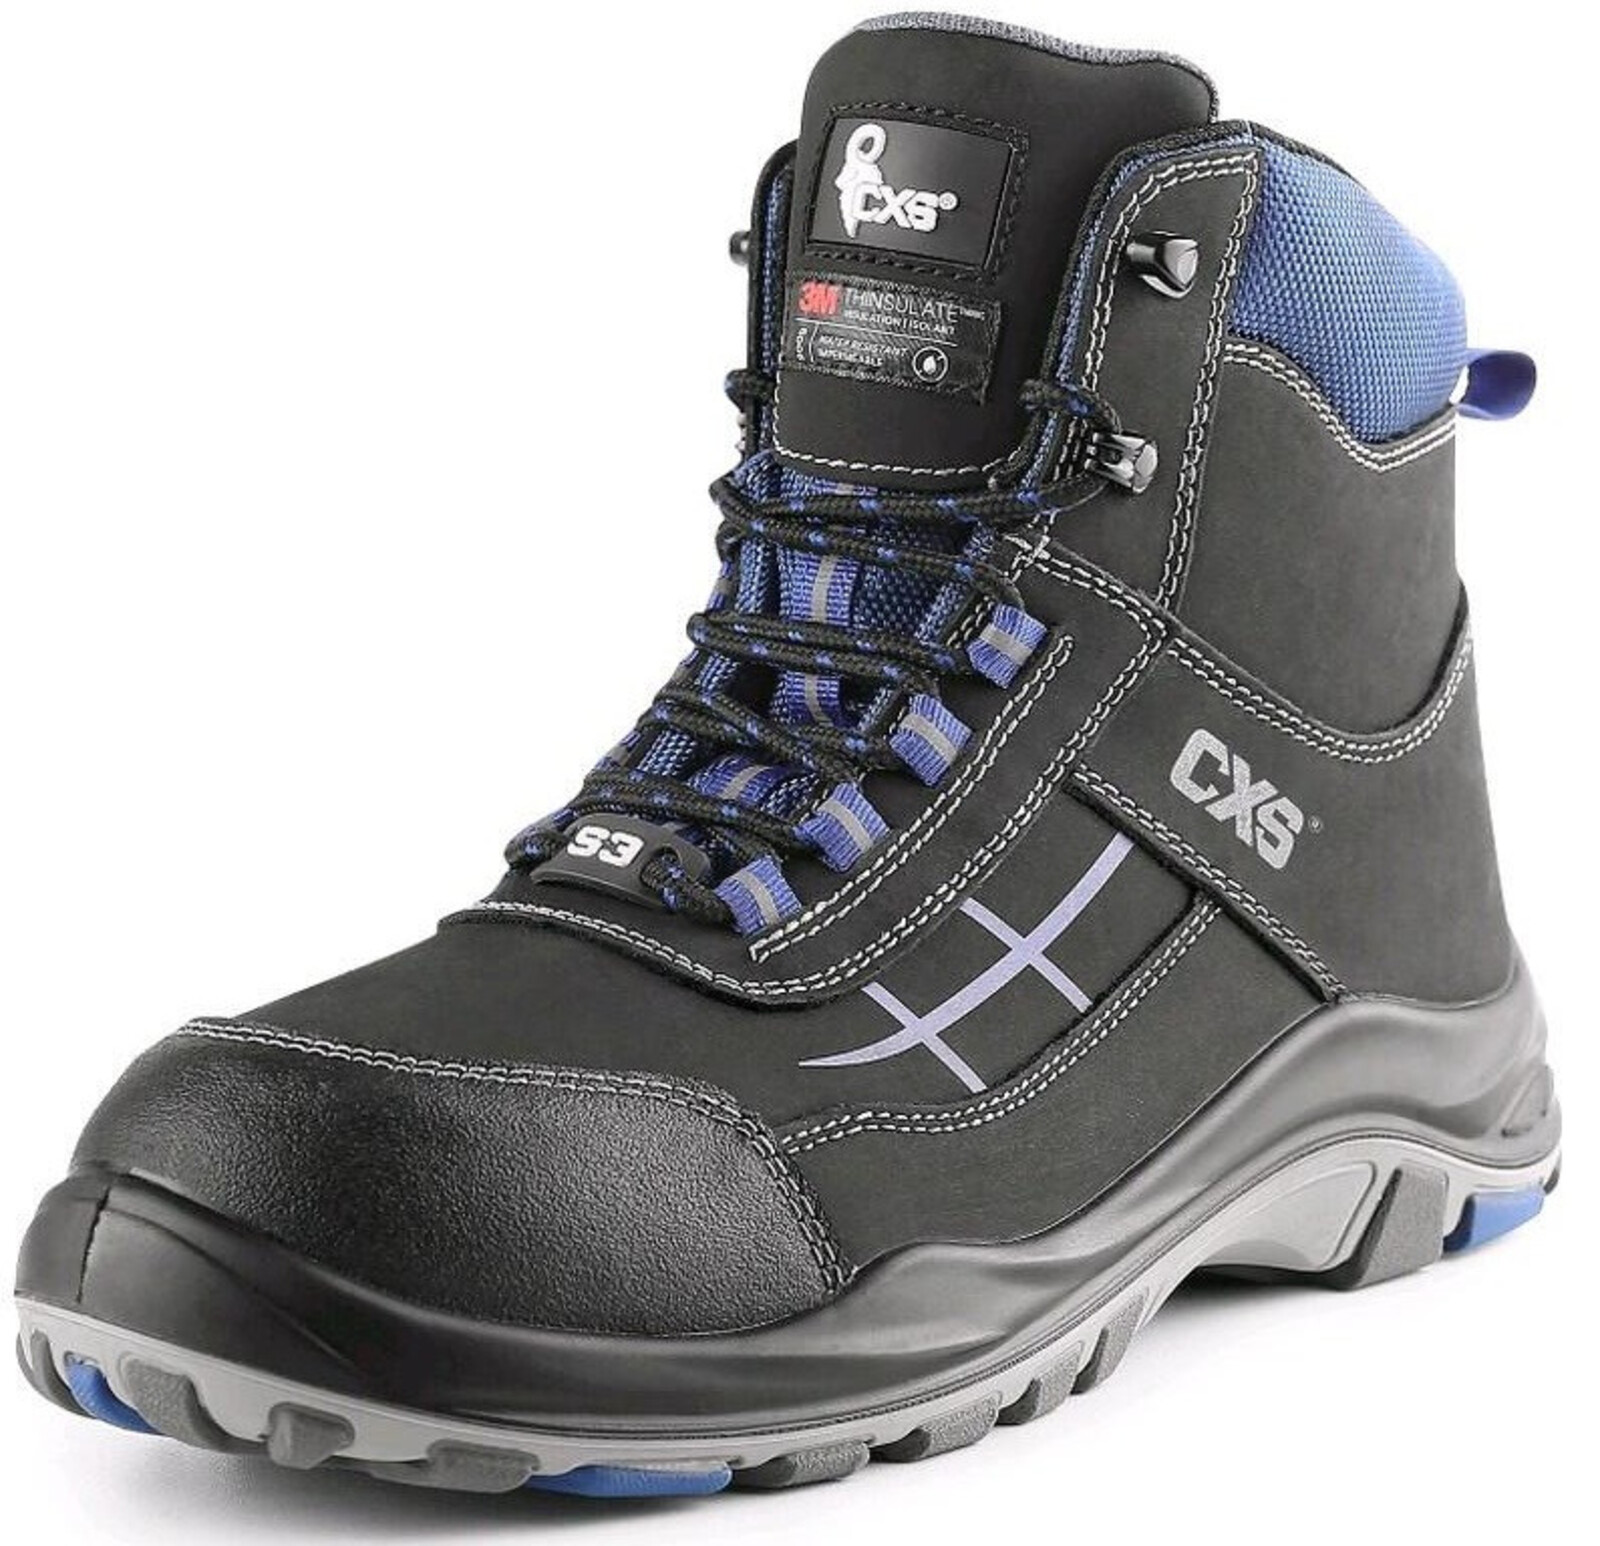 Zateplená bezpečnostná členková obuv CXS Dog Malamute S3 CI SRC - veľkosť: 40, farba: čierna/modrá